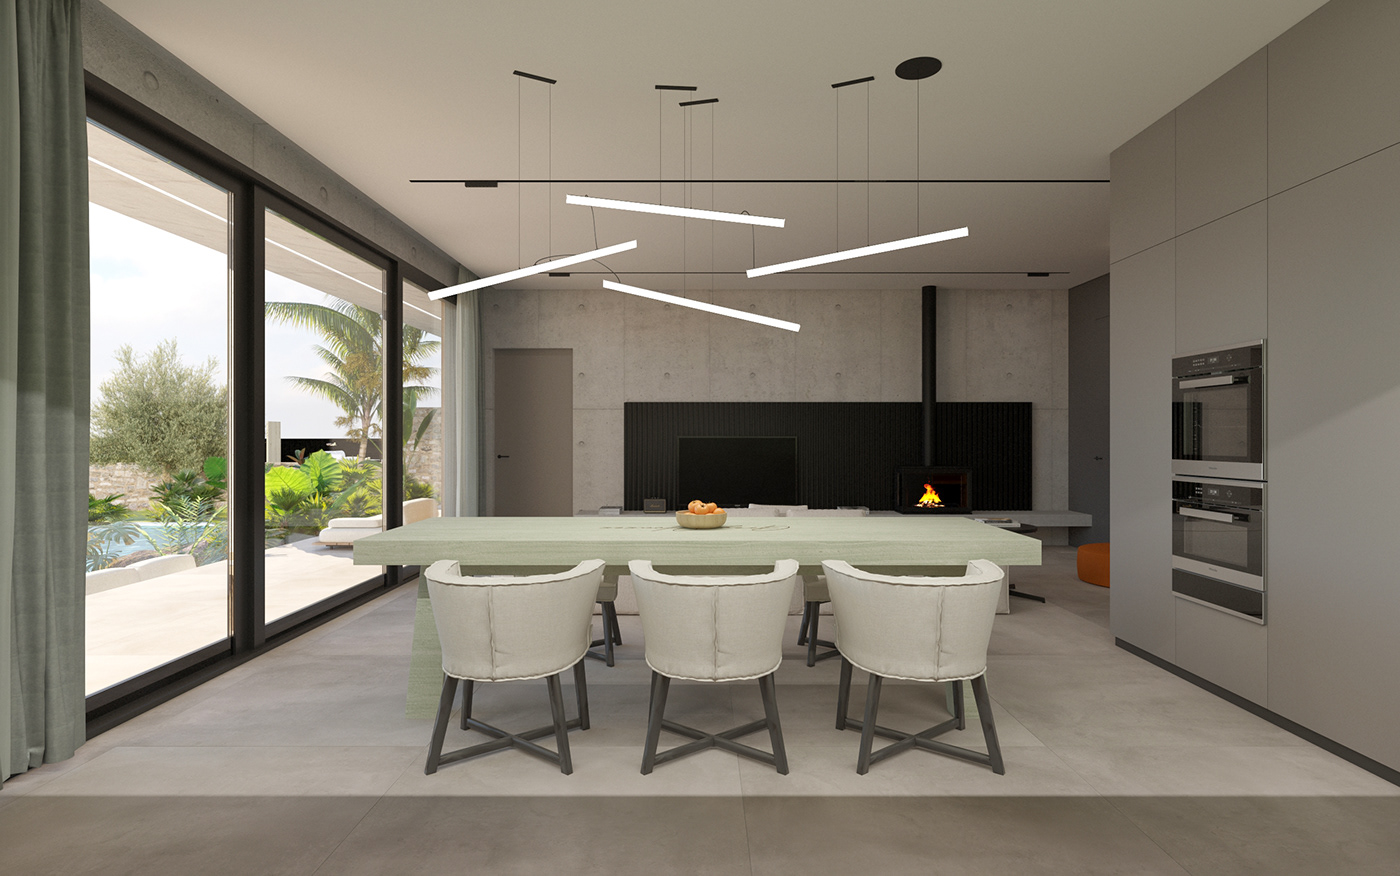 3ds max architect architecture archviz corona design Interior interior design  Project Render